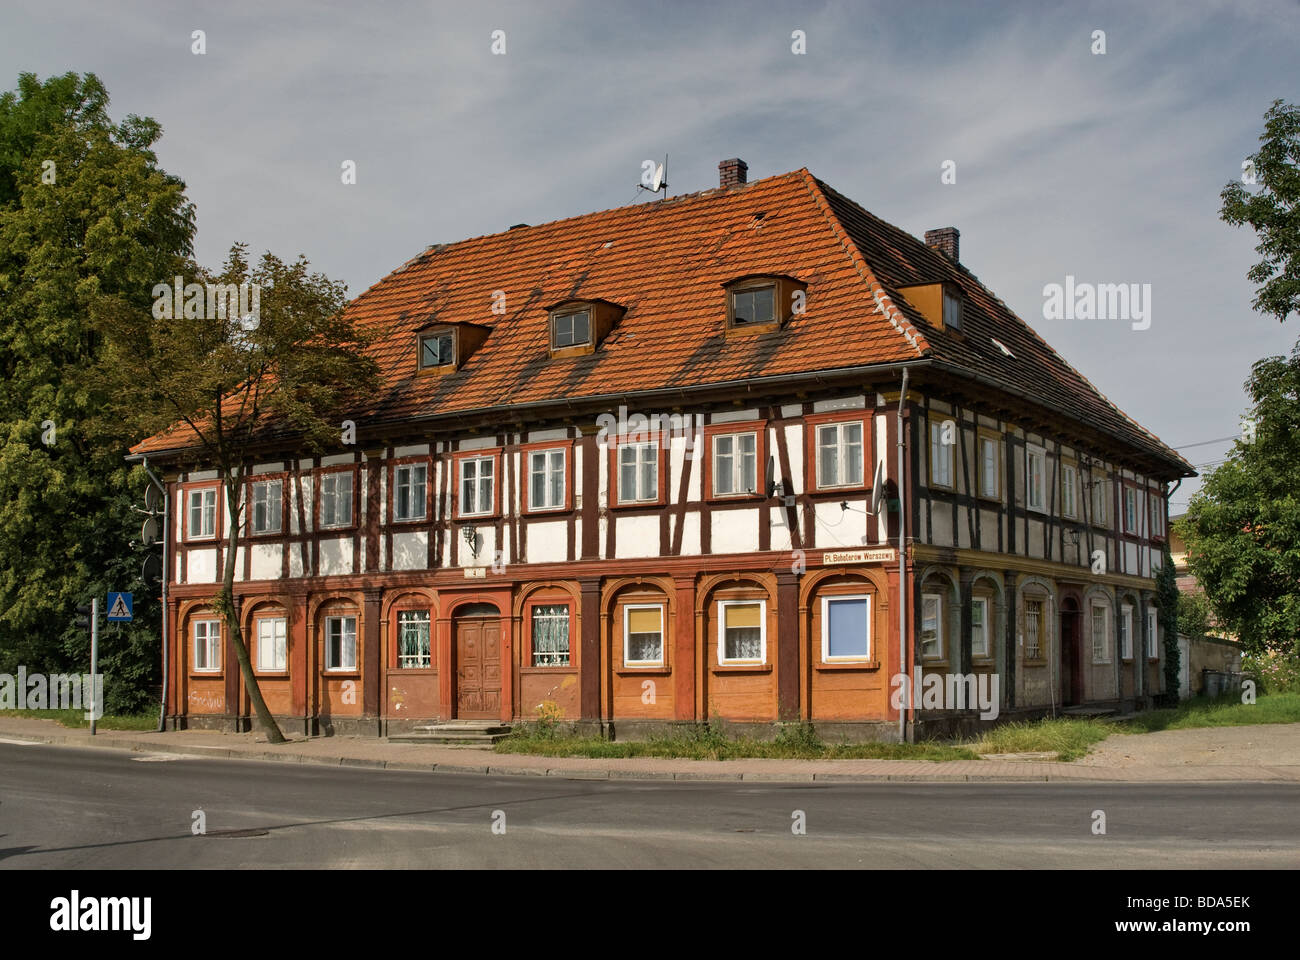 La jonction de tisserands de Lusace house dans la région de Basse Silésie Pologne Bogatynia Banque D'Images